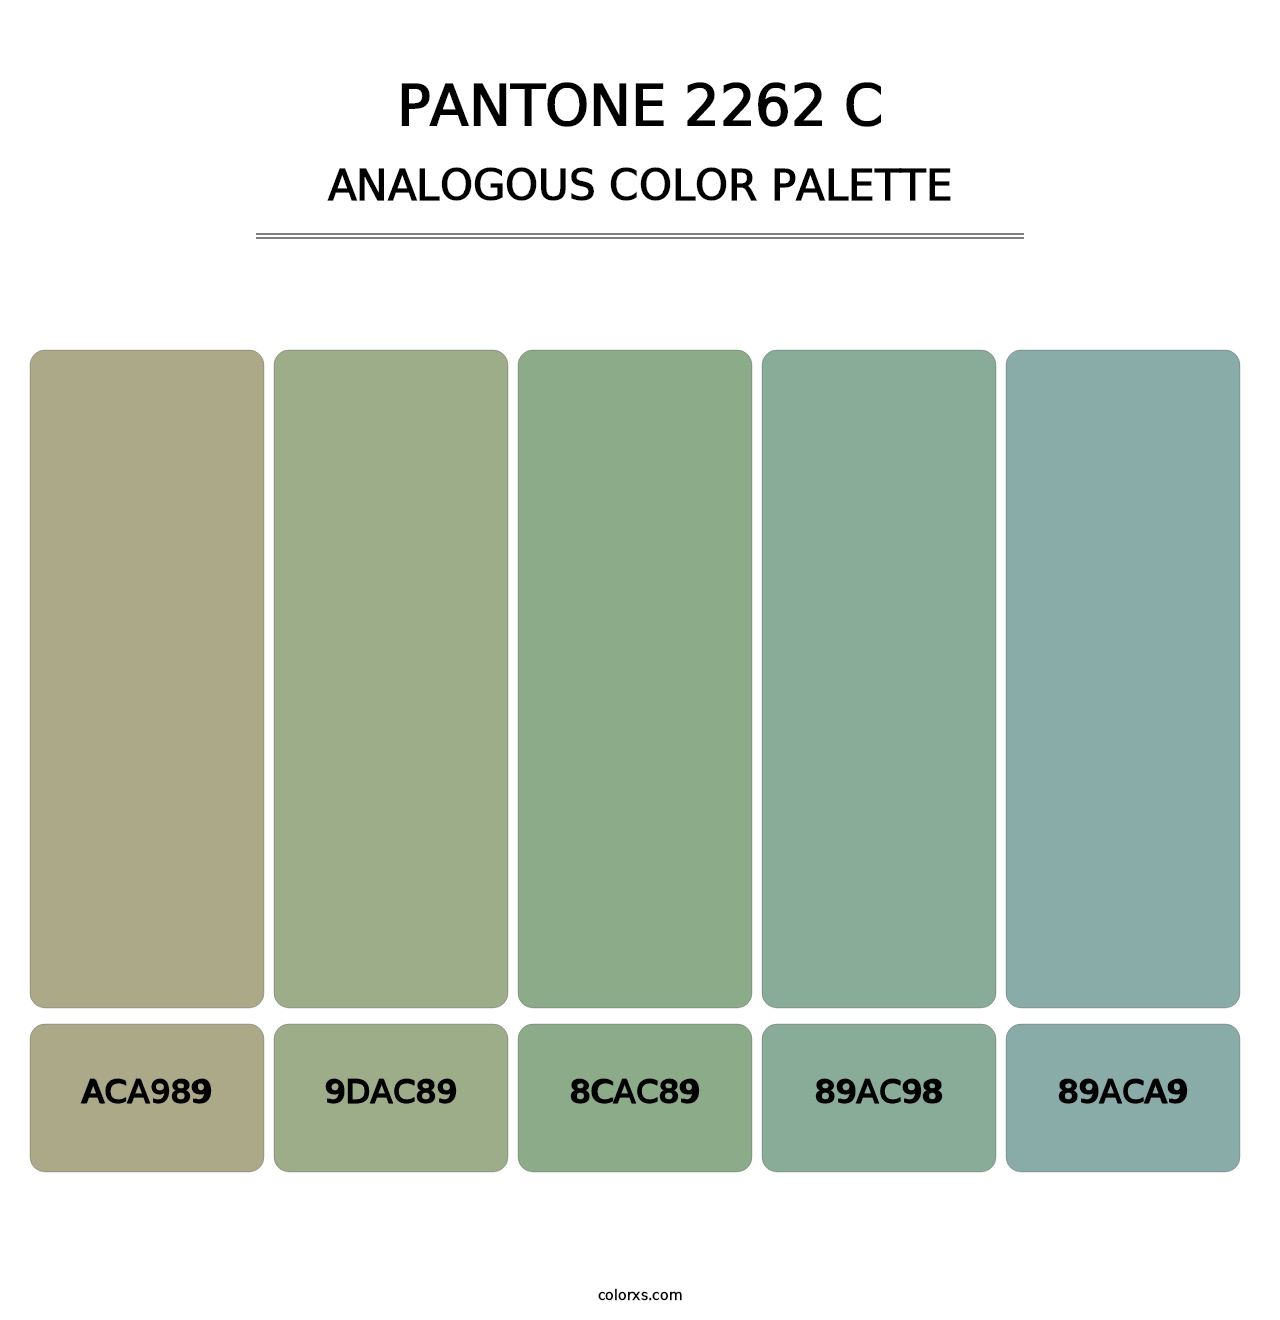 PANTONE 2262 C - Analogous Color Palette